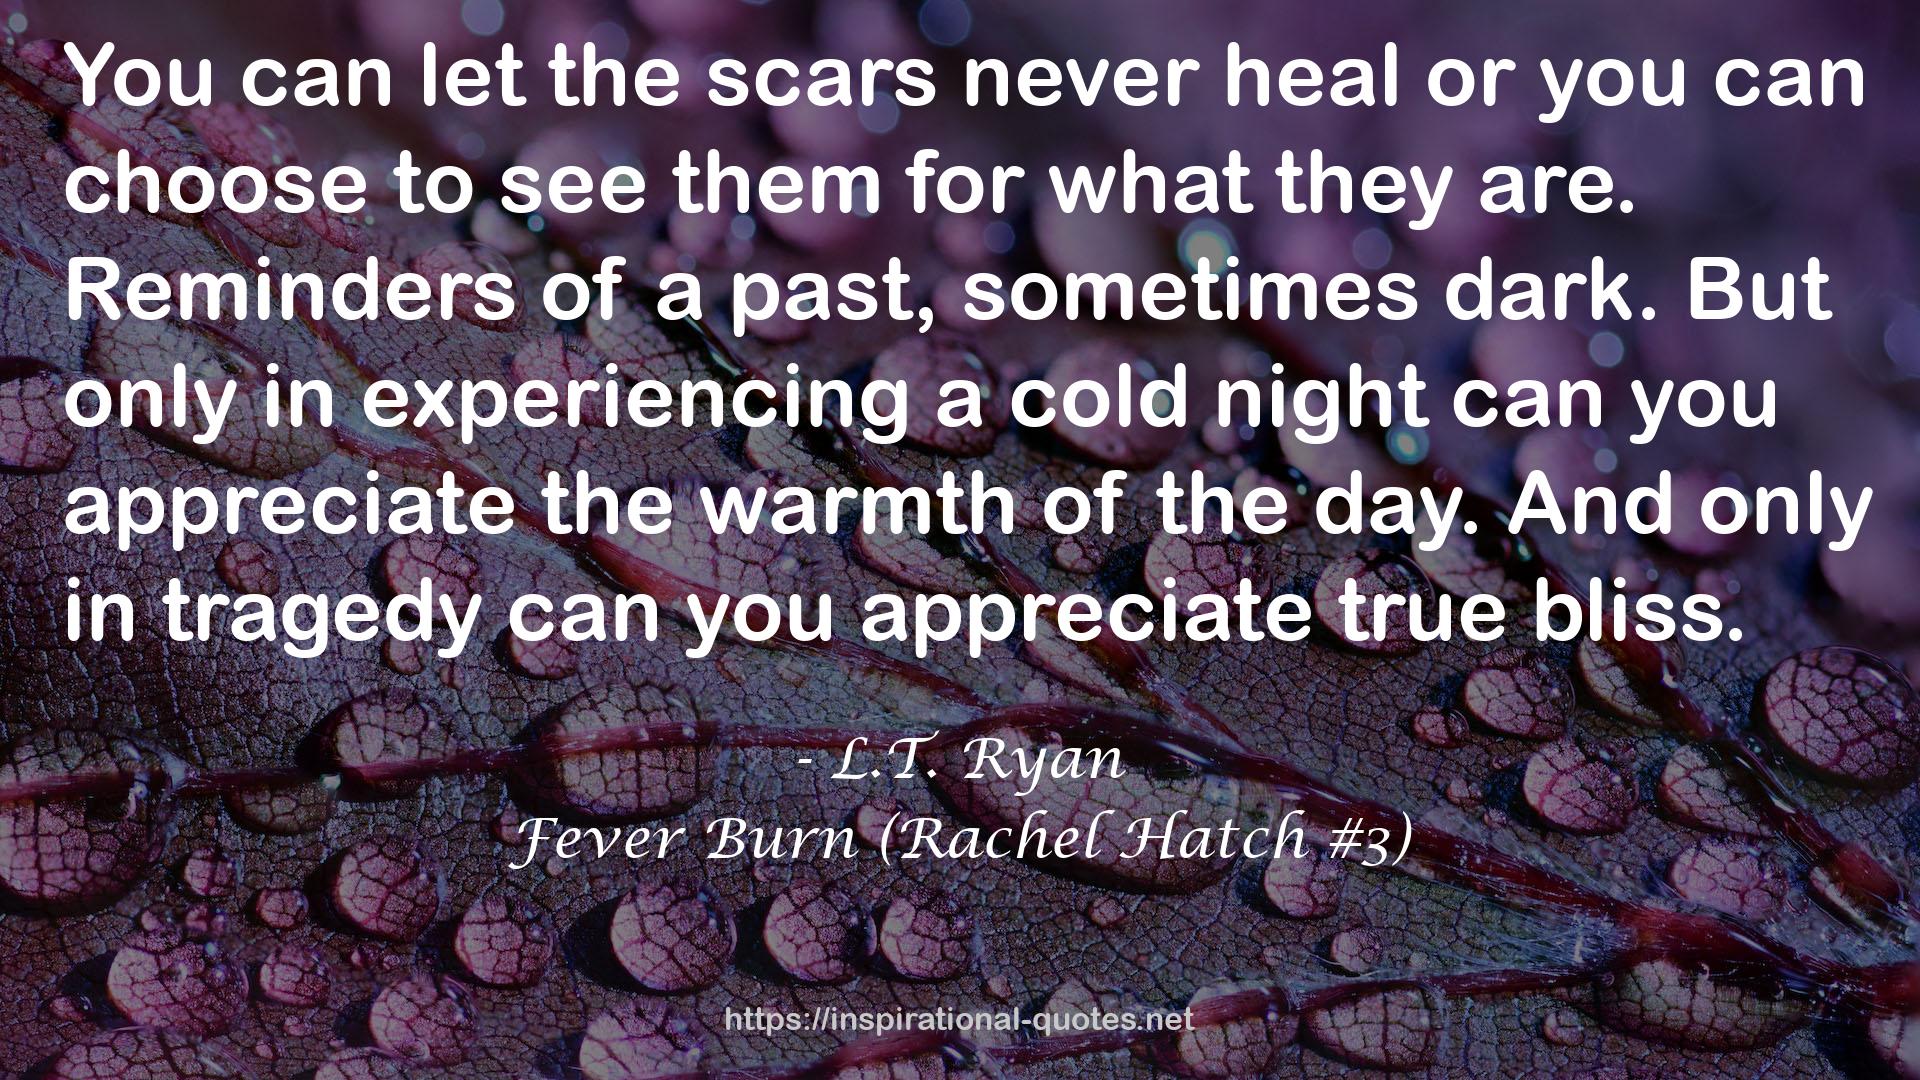 Fever Burn (Rachel Hatch #3) QUOTES